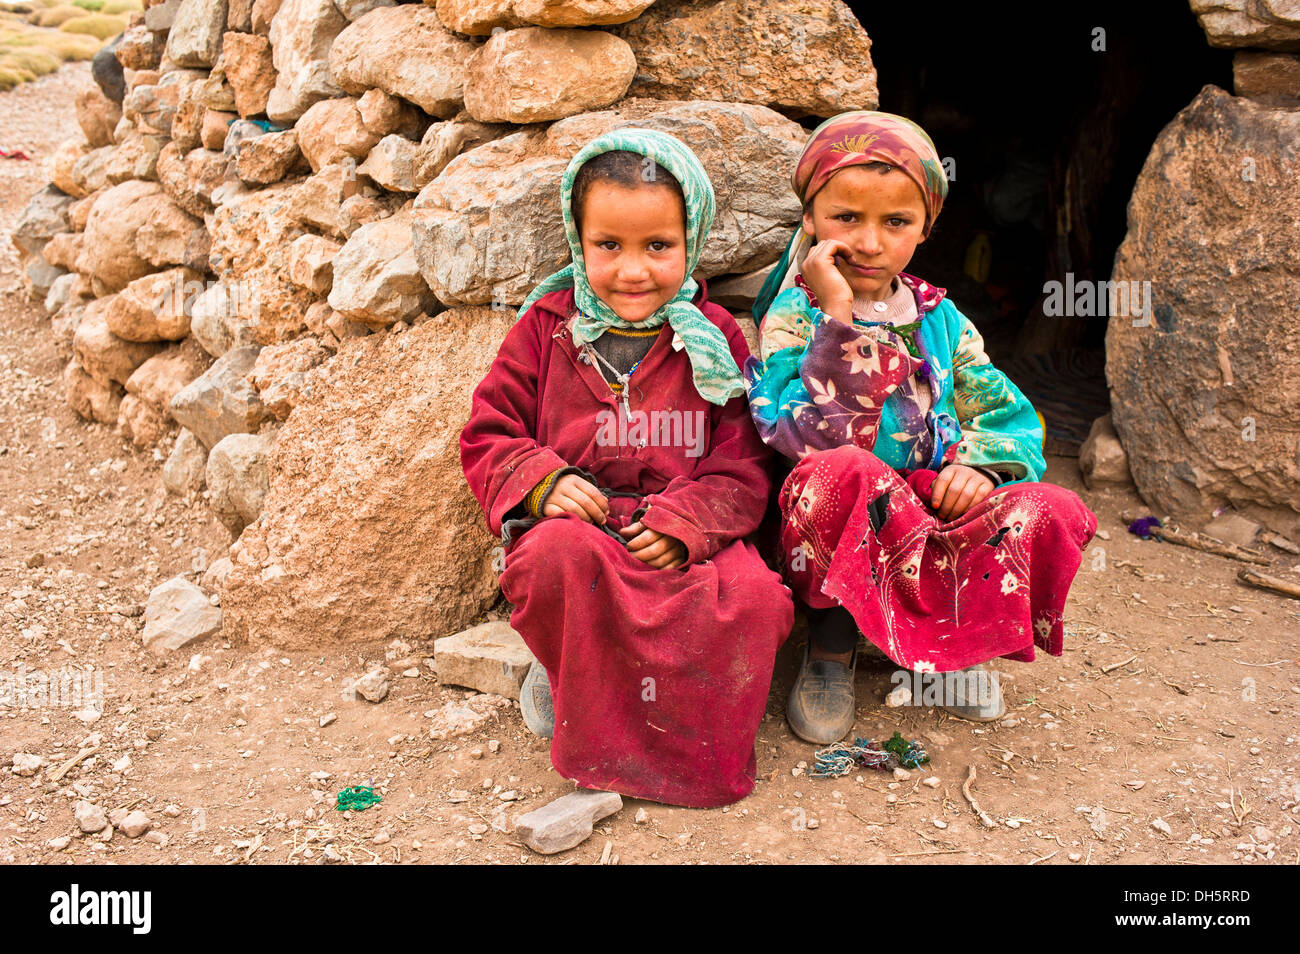 Zwei Mädchen mit Kopftuch, Nomadenkinder, Berber Leute, vor einem einfachen Stein Wohnung hocken Stockfoto